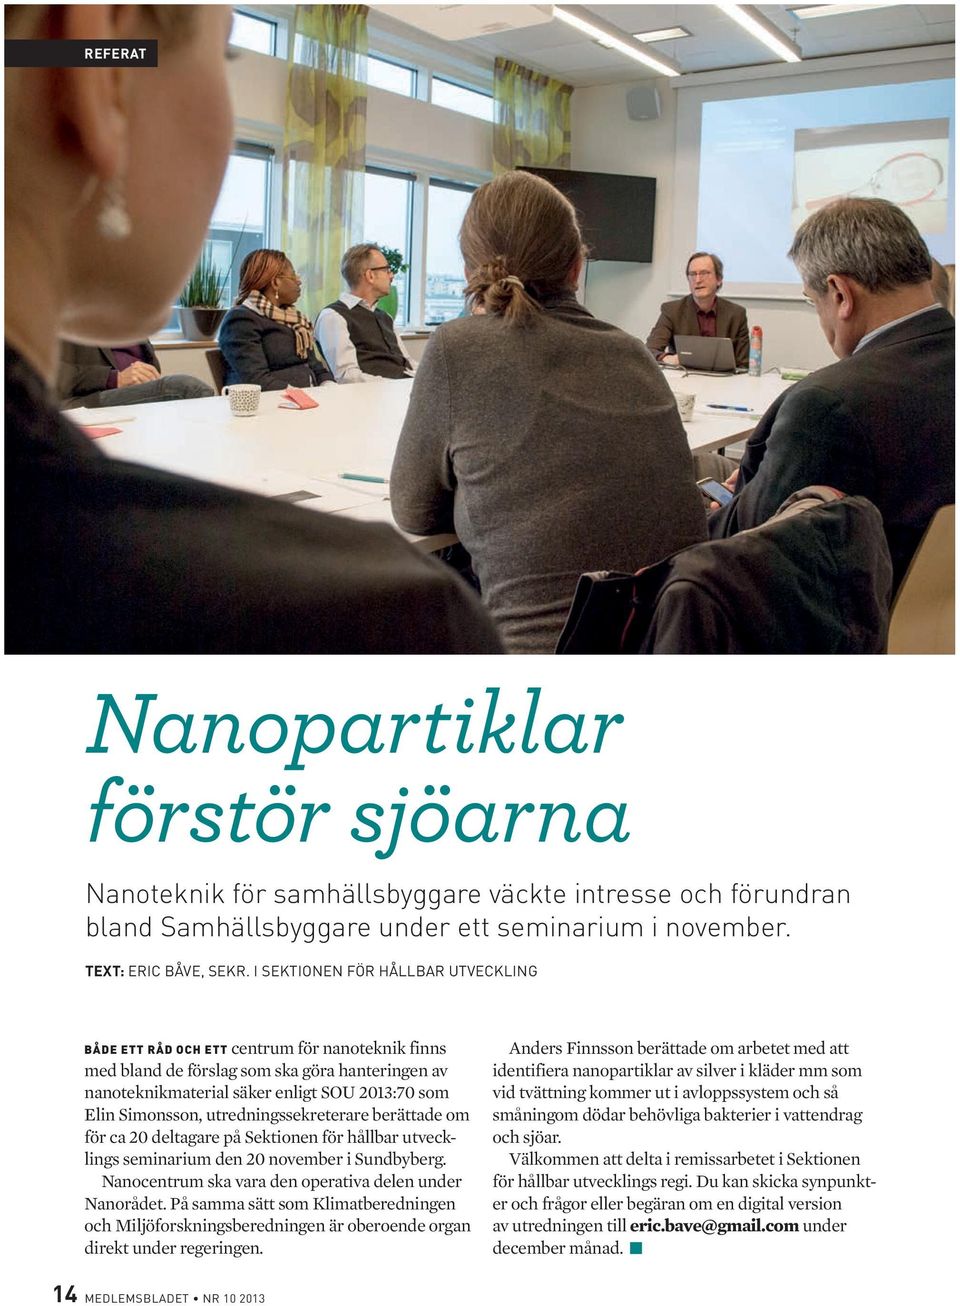 utredningssekreterare berättade om för ca 20 deltagare på Sektionen för hållbar utvecklings seminarium den 20 november i Sundbyberg. Nanocentrum ska vara den operativa delen under Nanorådet.